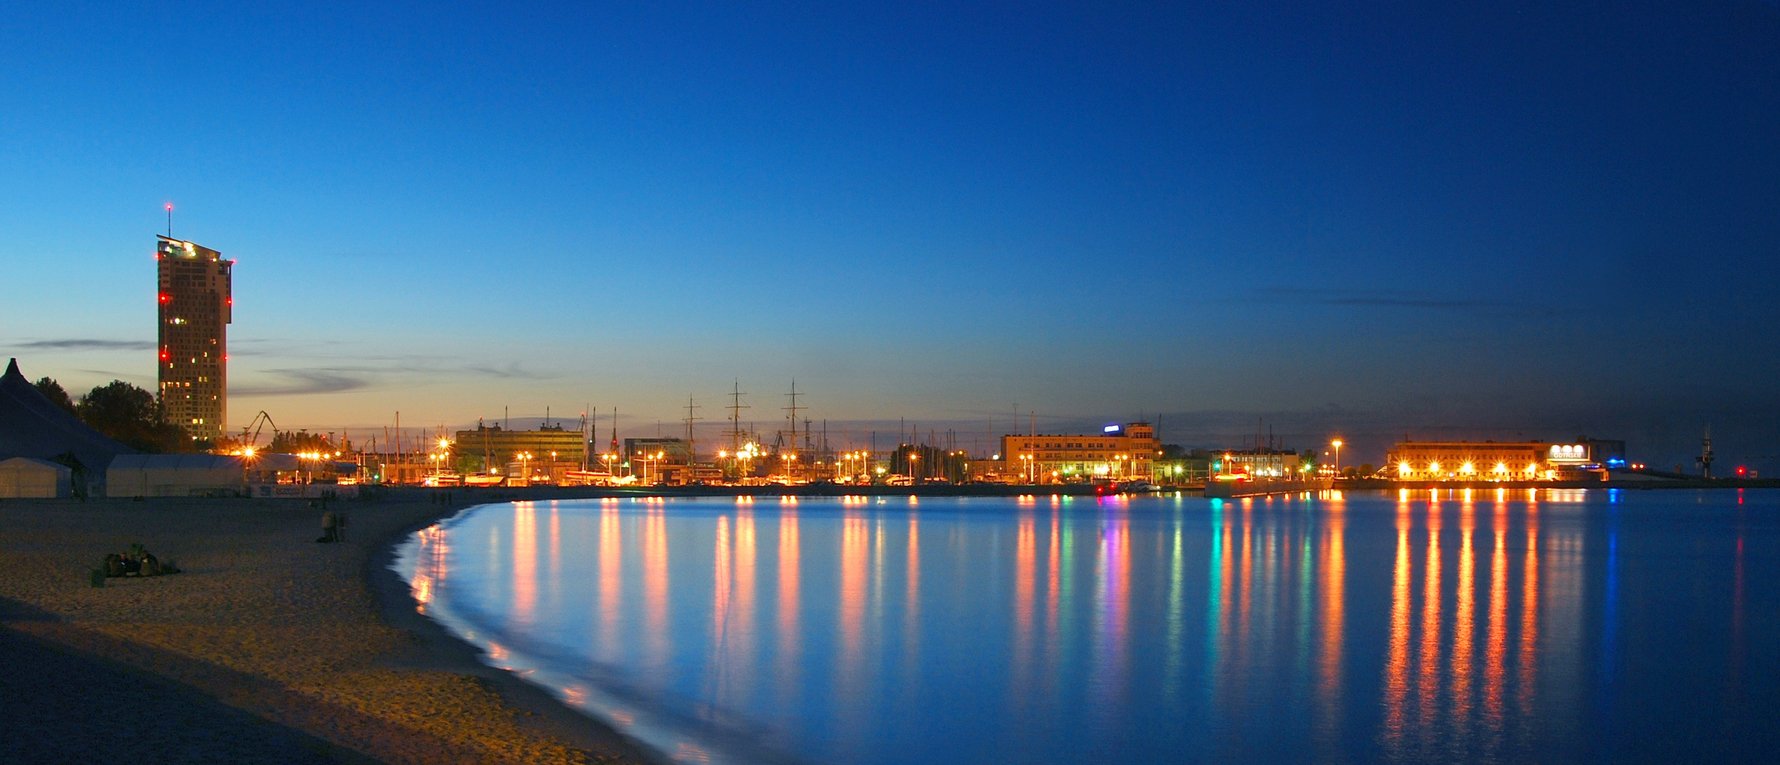 Gdynia at Night - Photo by Krzysztof Romański / Courtesy of Gdynia City Council